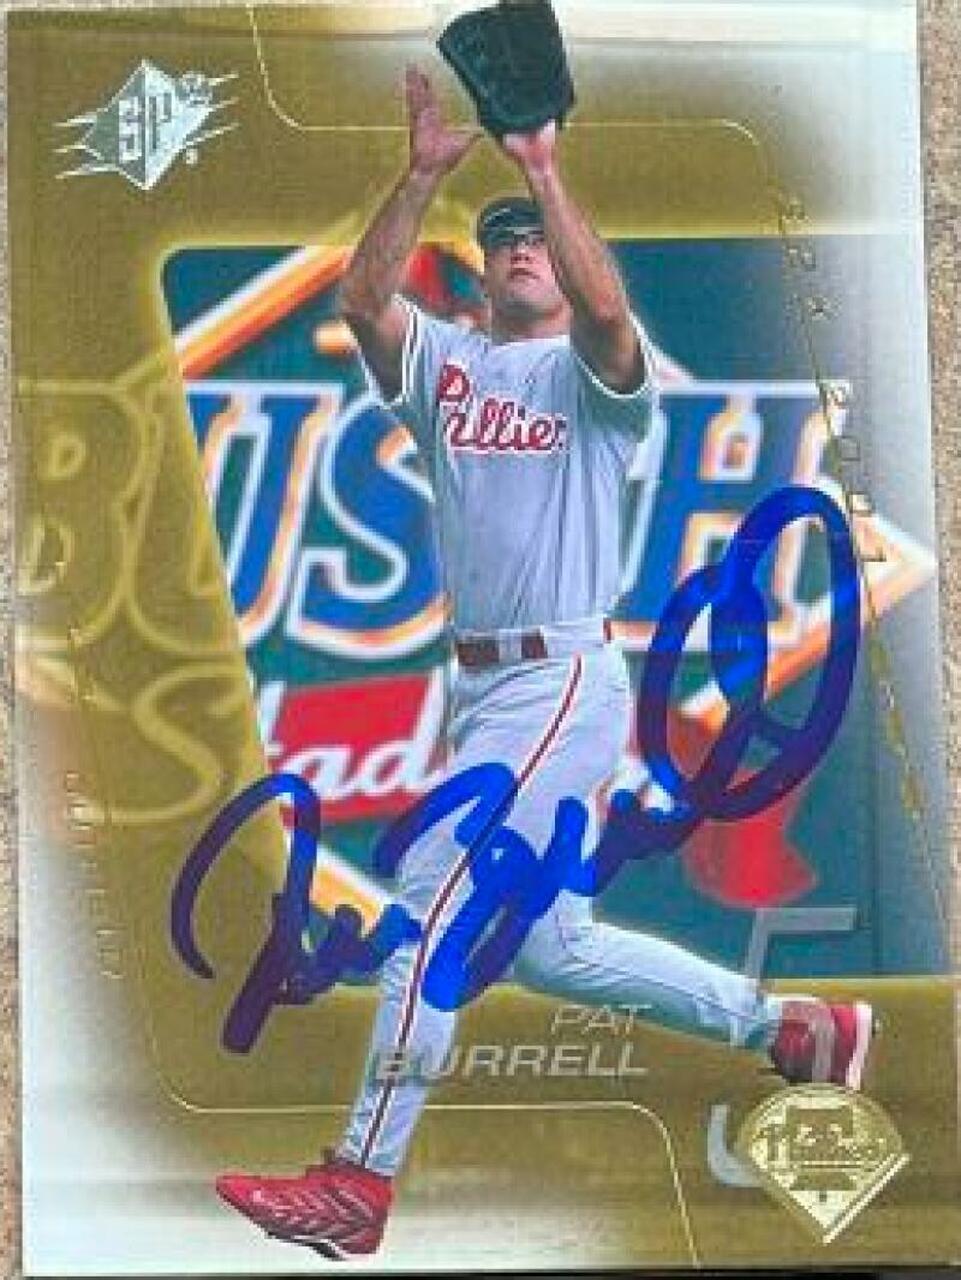 Pat Burrell Signed 2001 SPx Baseball Card - Philadelphia Phillies - PastPros